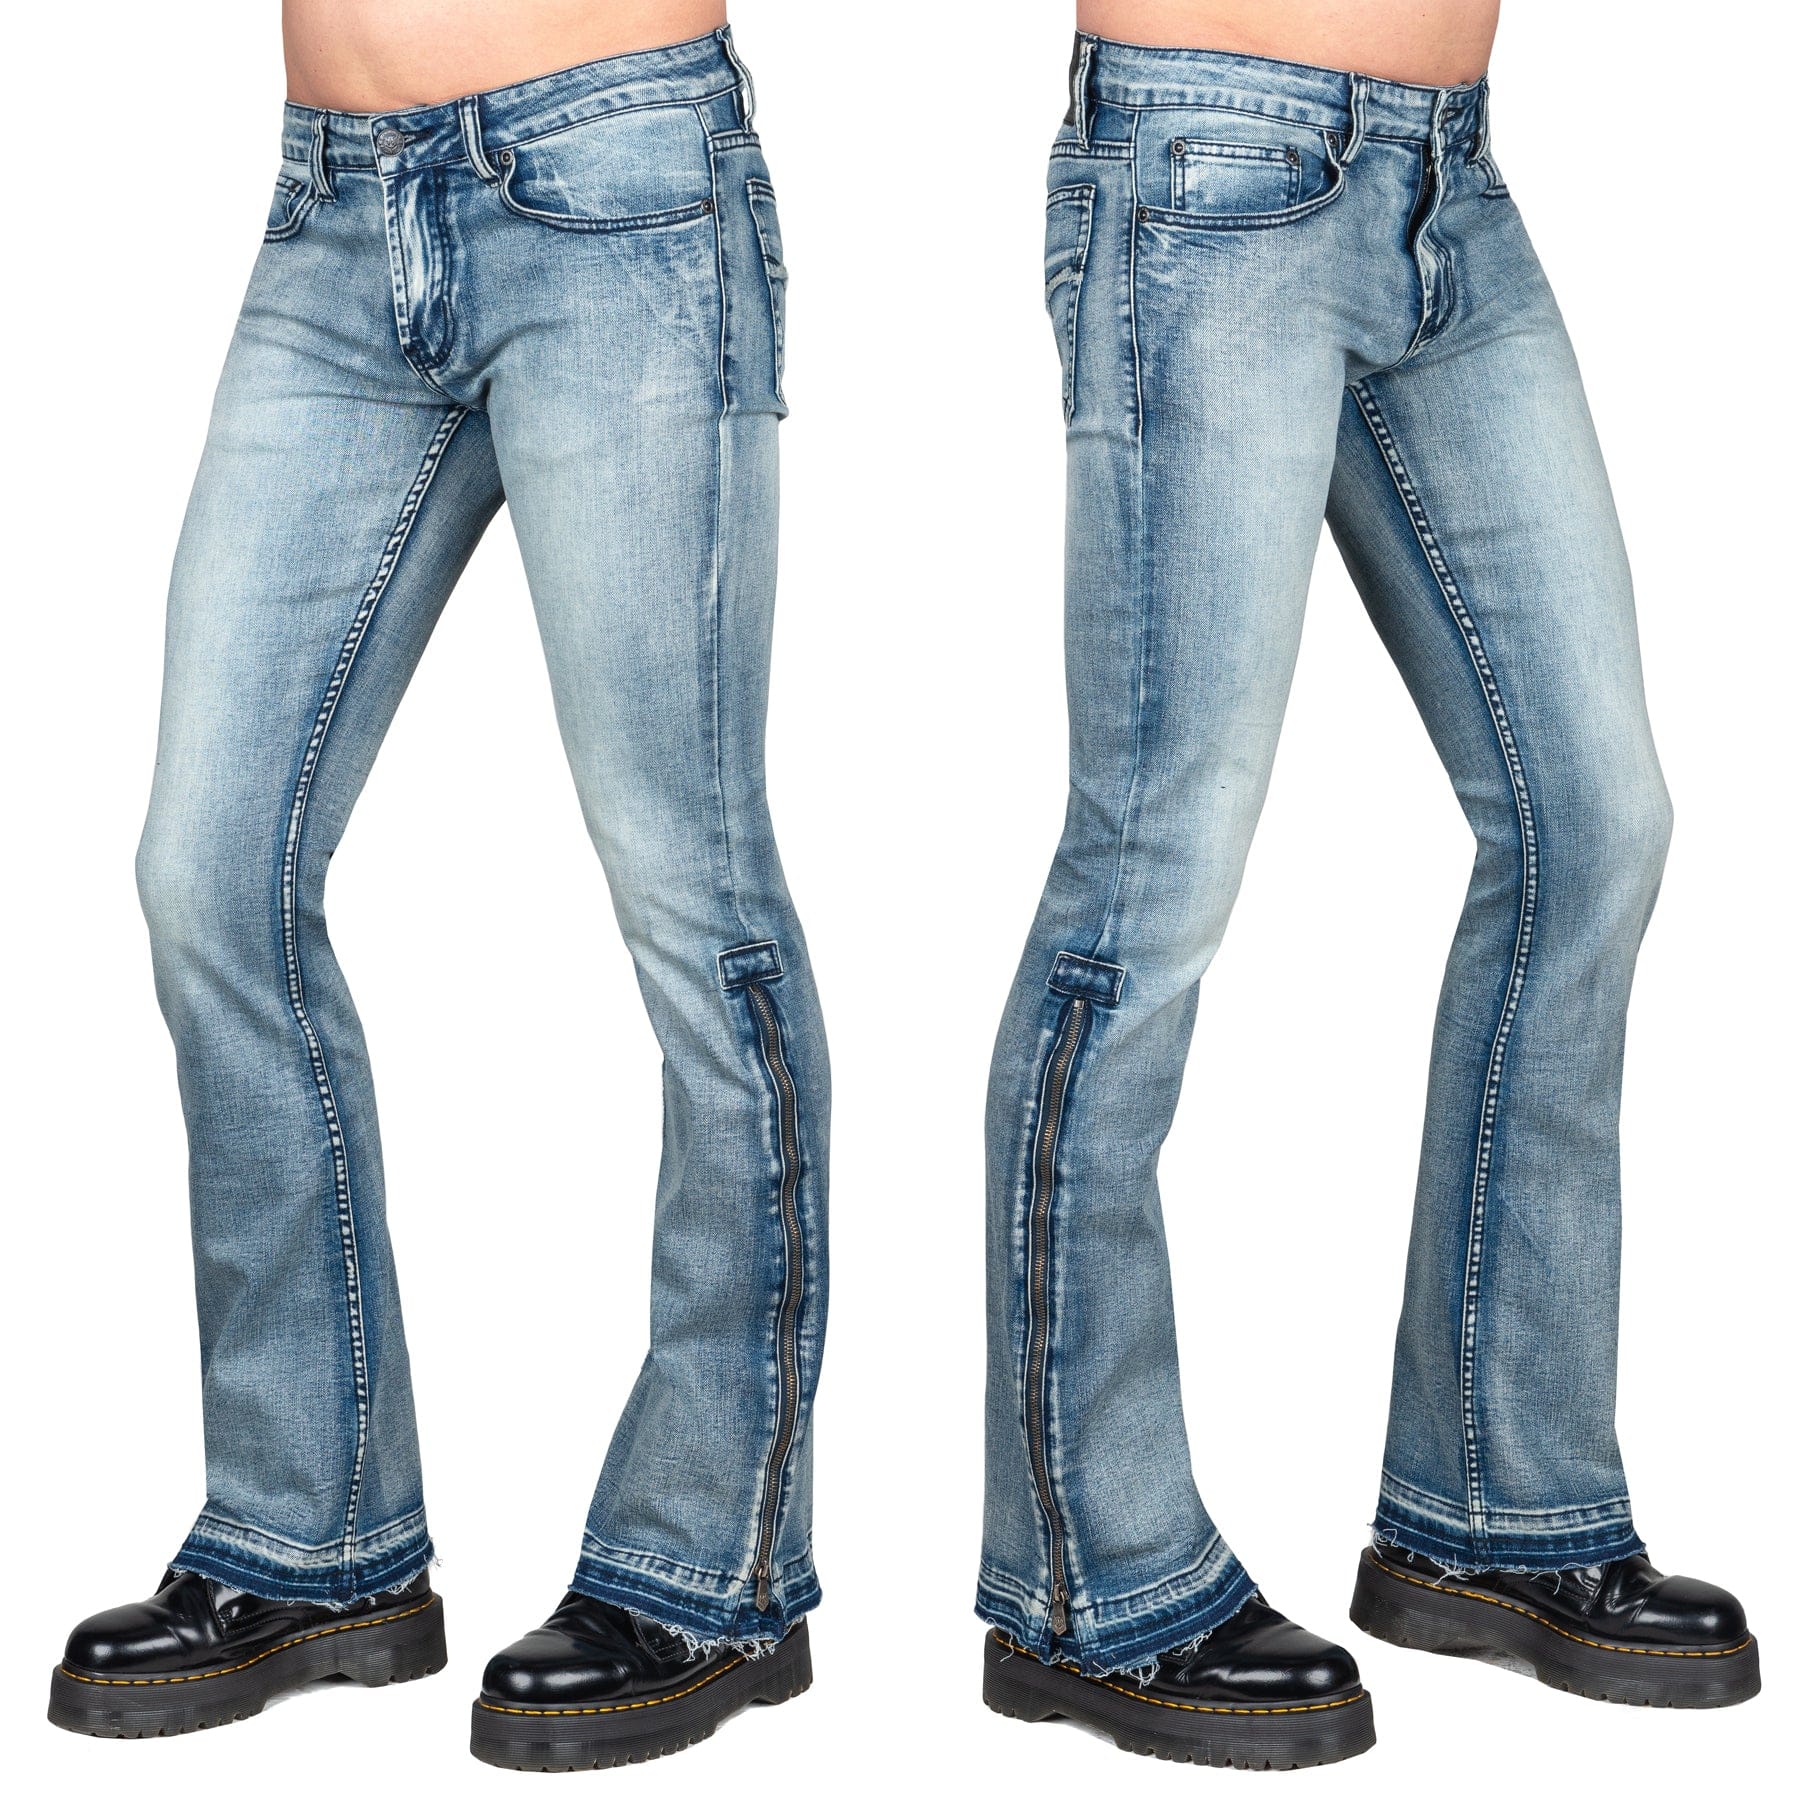 Wornstar Clothing Hellraiser Side Zipper Jeans - Classic Blue